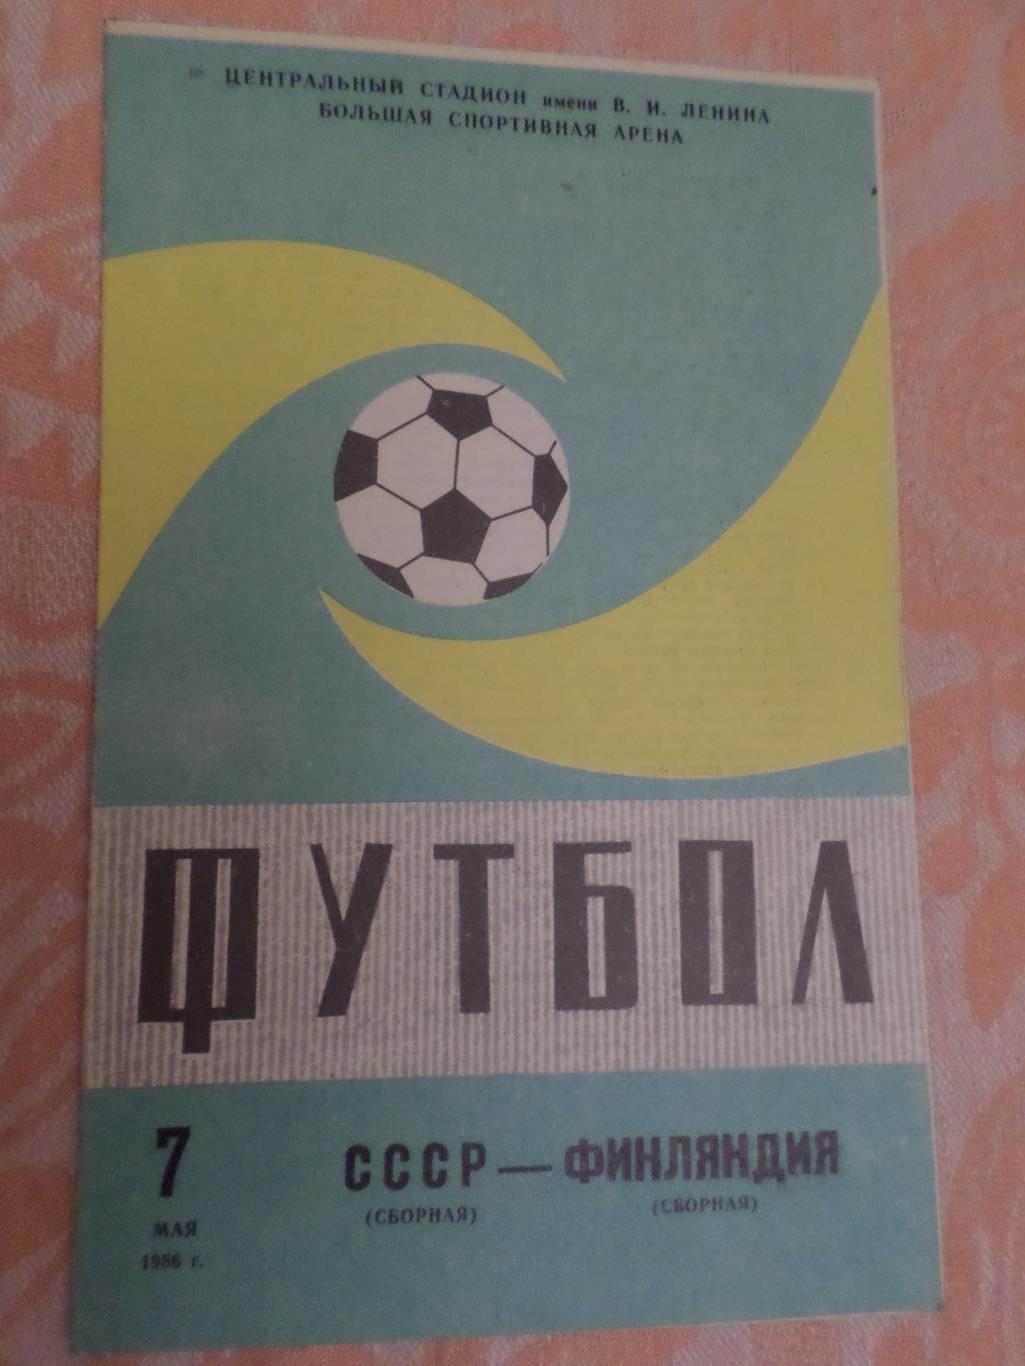 Программа СССР - Финляндия 1986 г обл зел